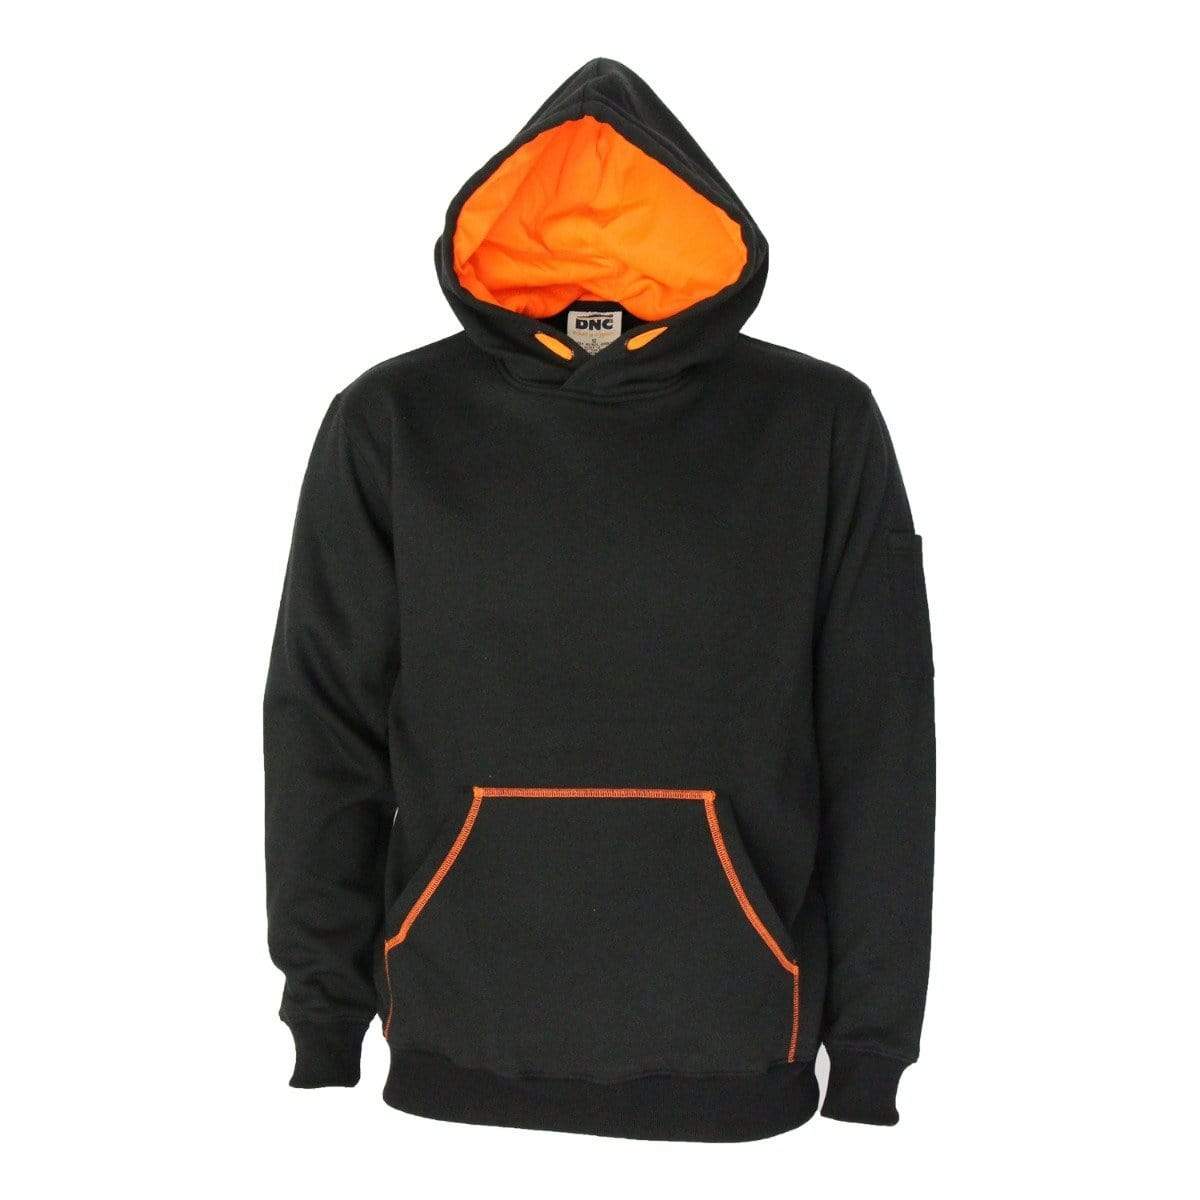 Dnc Workwear Kangaroo Pocket Super Brushed Fleece Hoodie - 5423 Work Wear DNC Workwear Black/Orange XS 